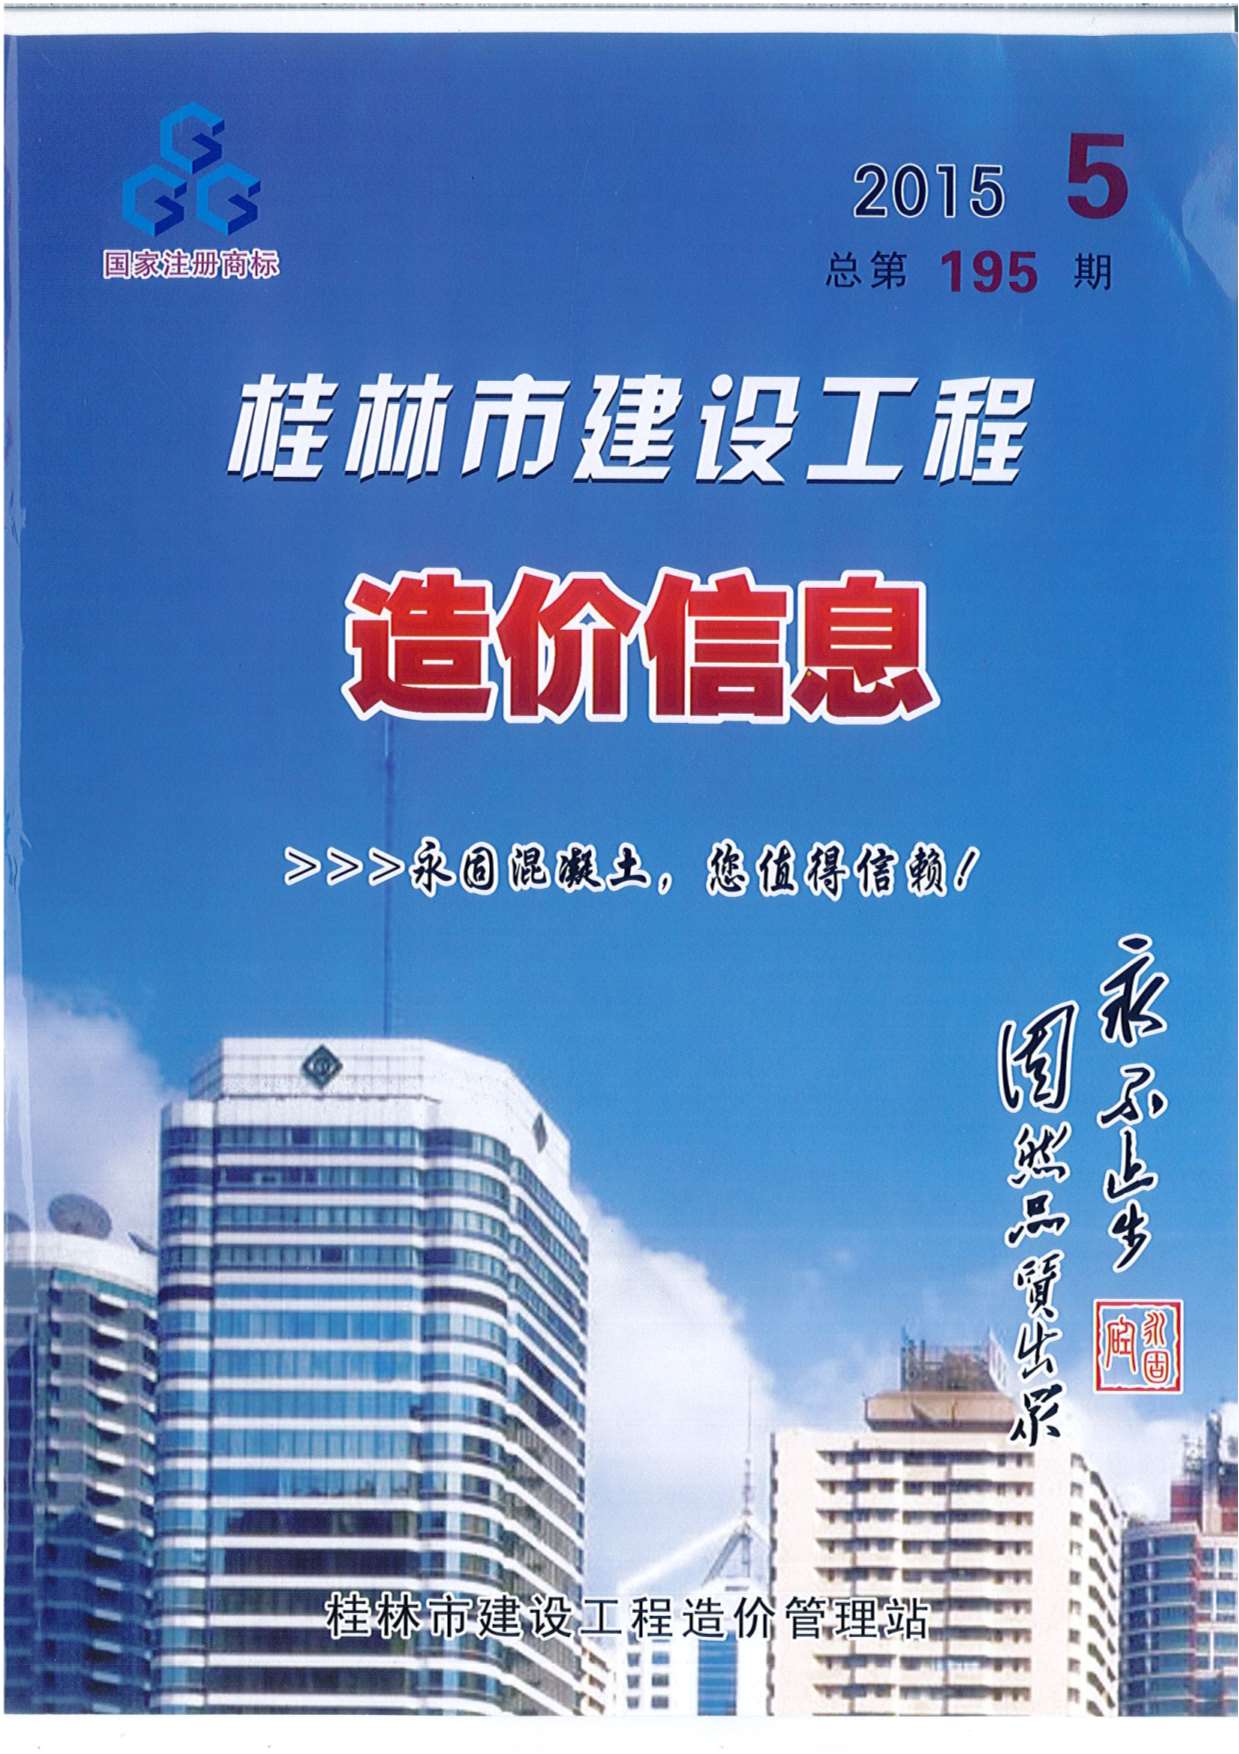 桂林市2015年5月材料价